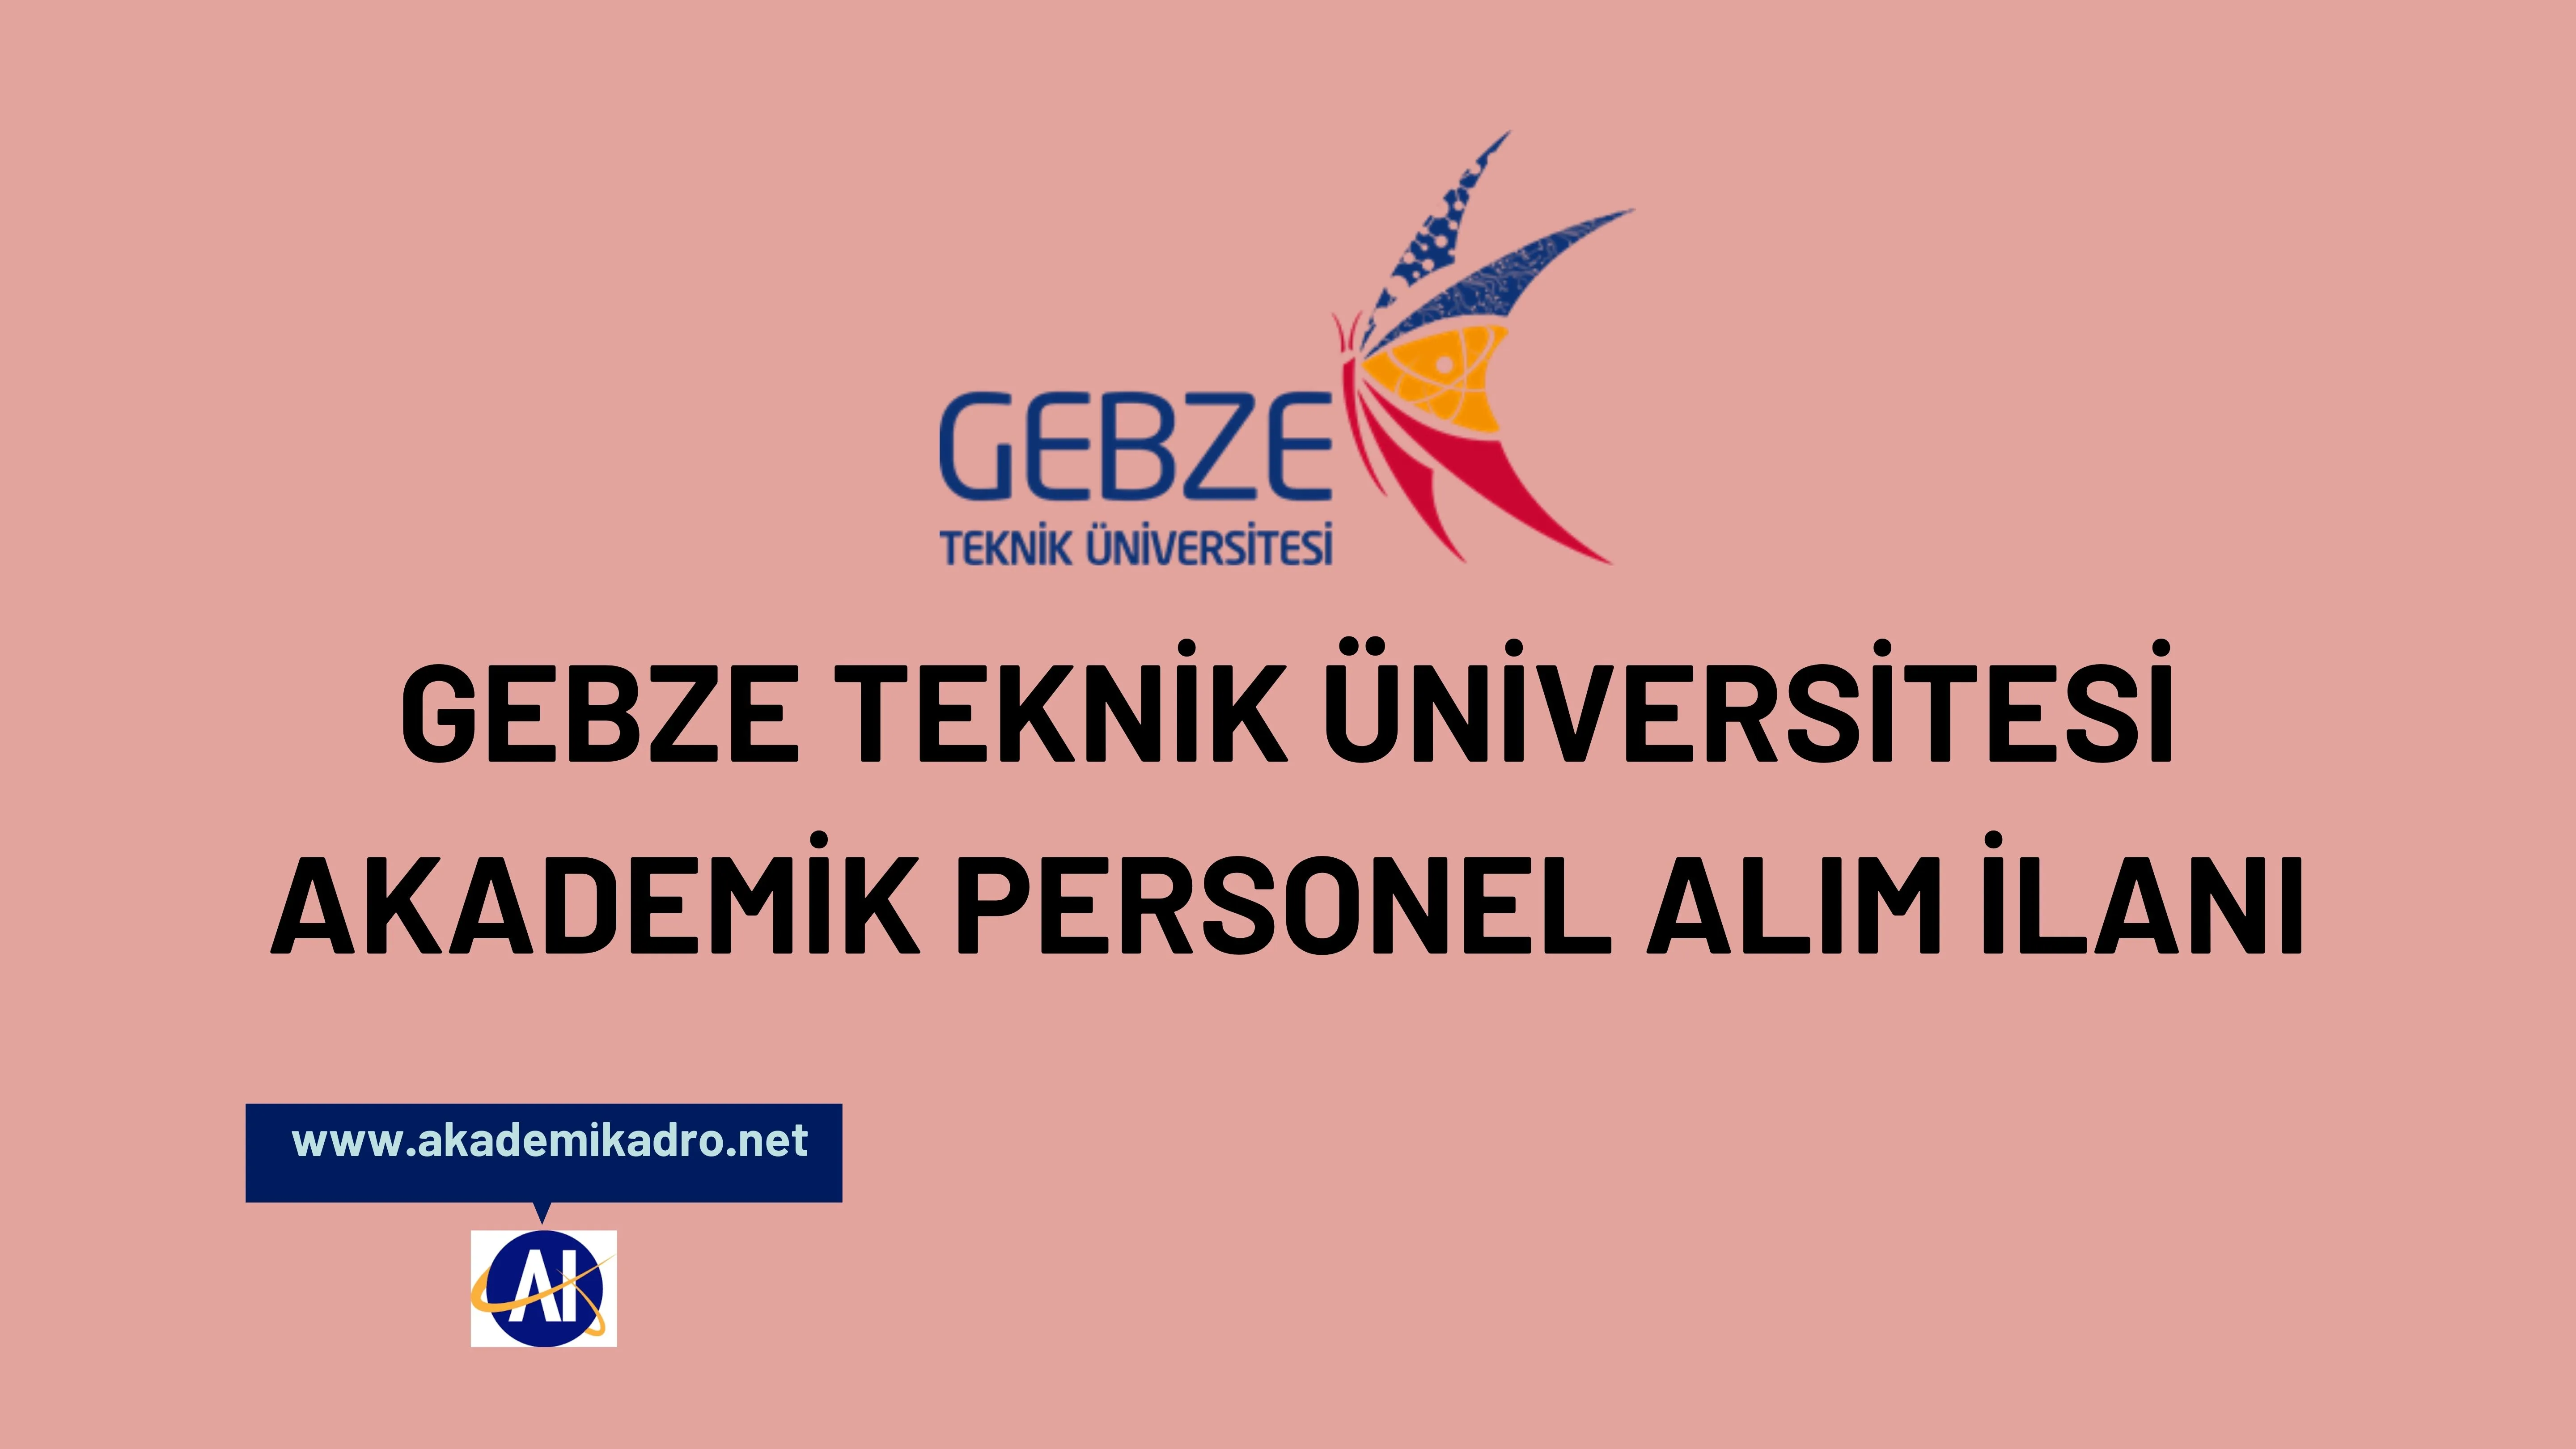 Gebze Teknik Üniversitesi 3 akademik personel alacak